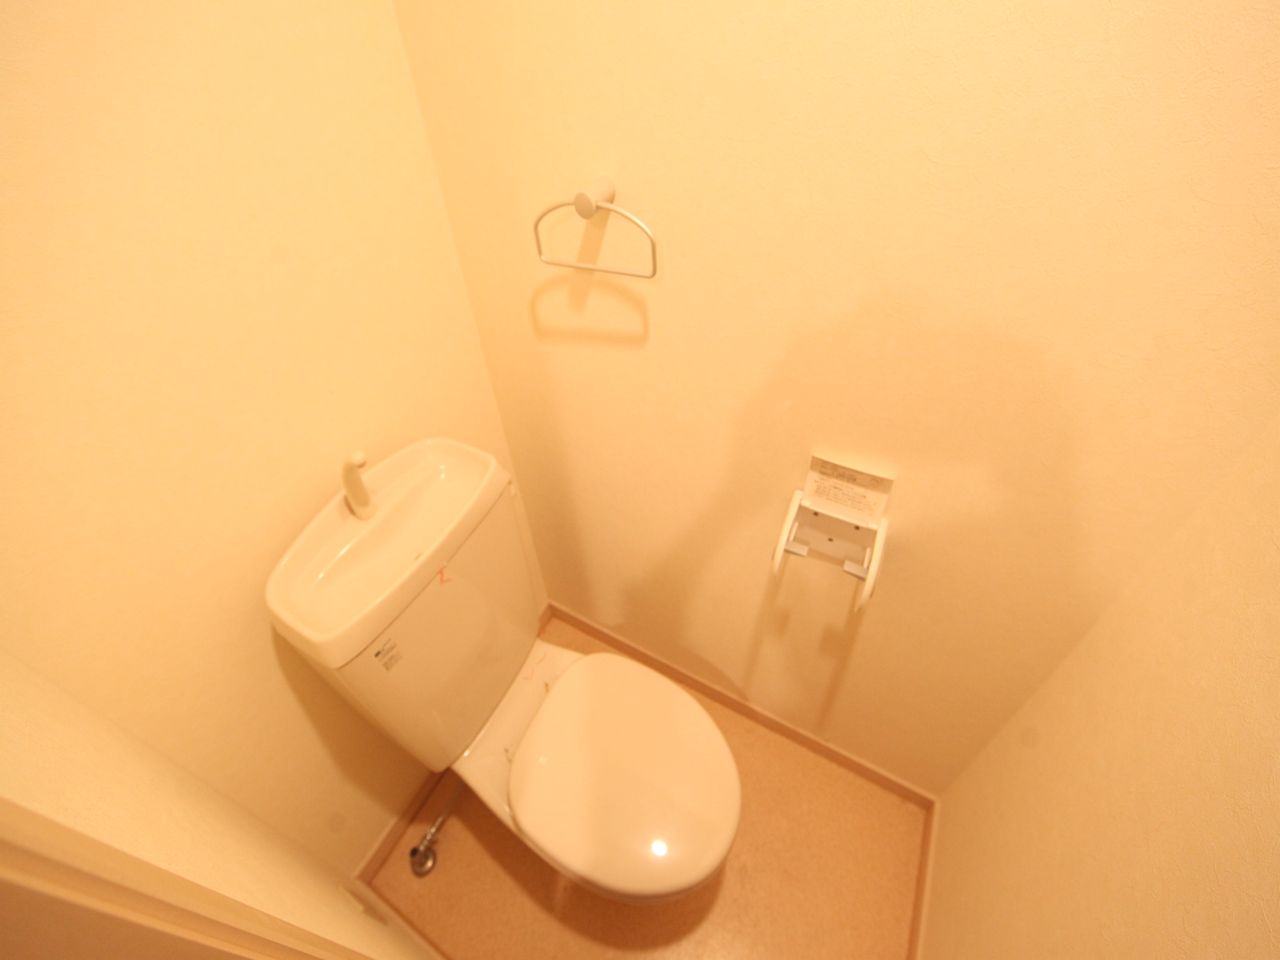 Toilet. Toilet (bath separate toilet) warm water washing toilet seat mounted Allowed